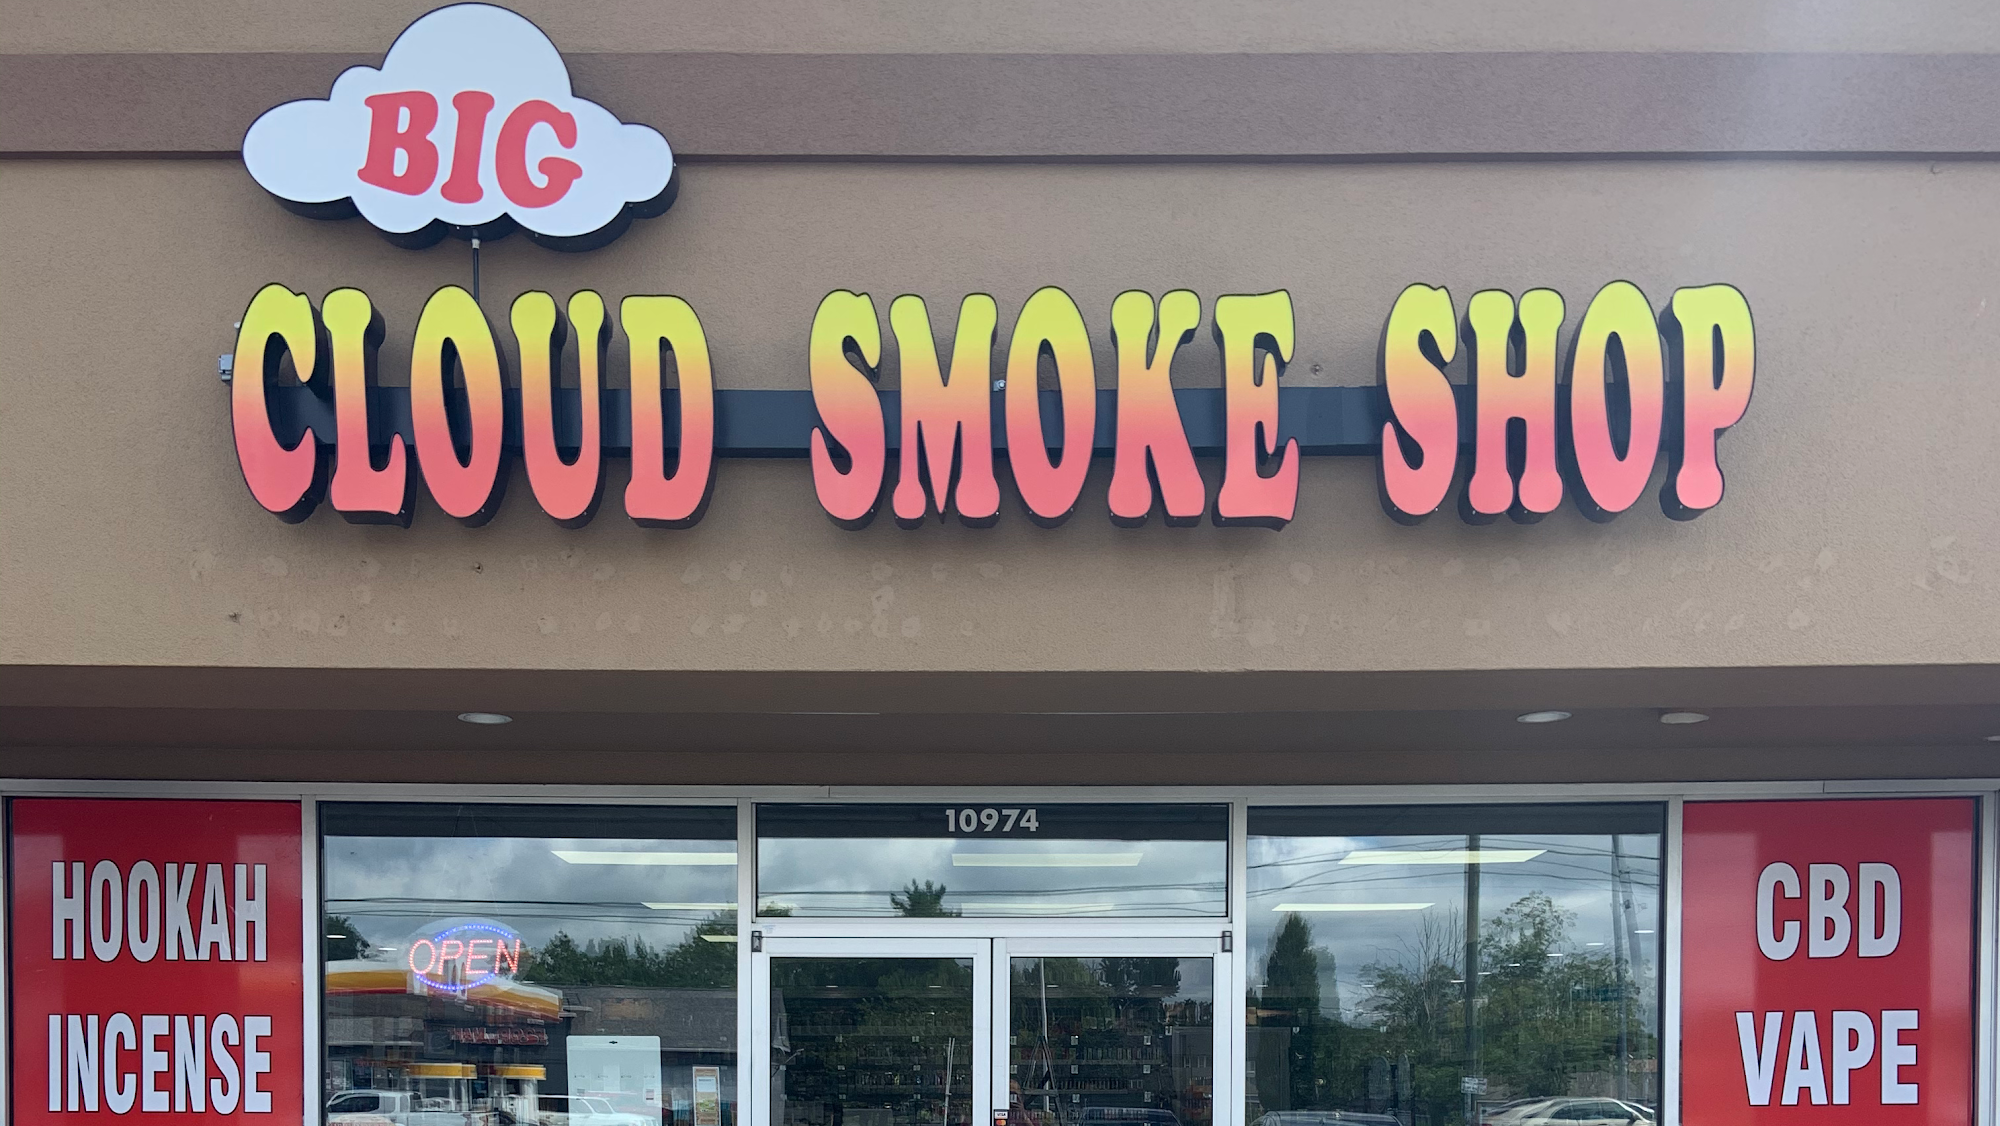 Big Cloud Smoke Shop